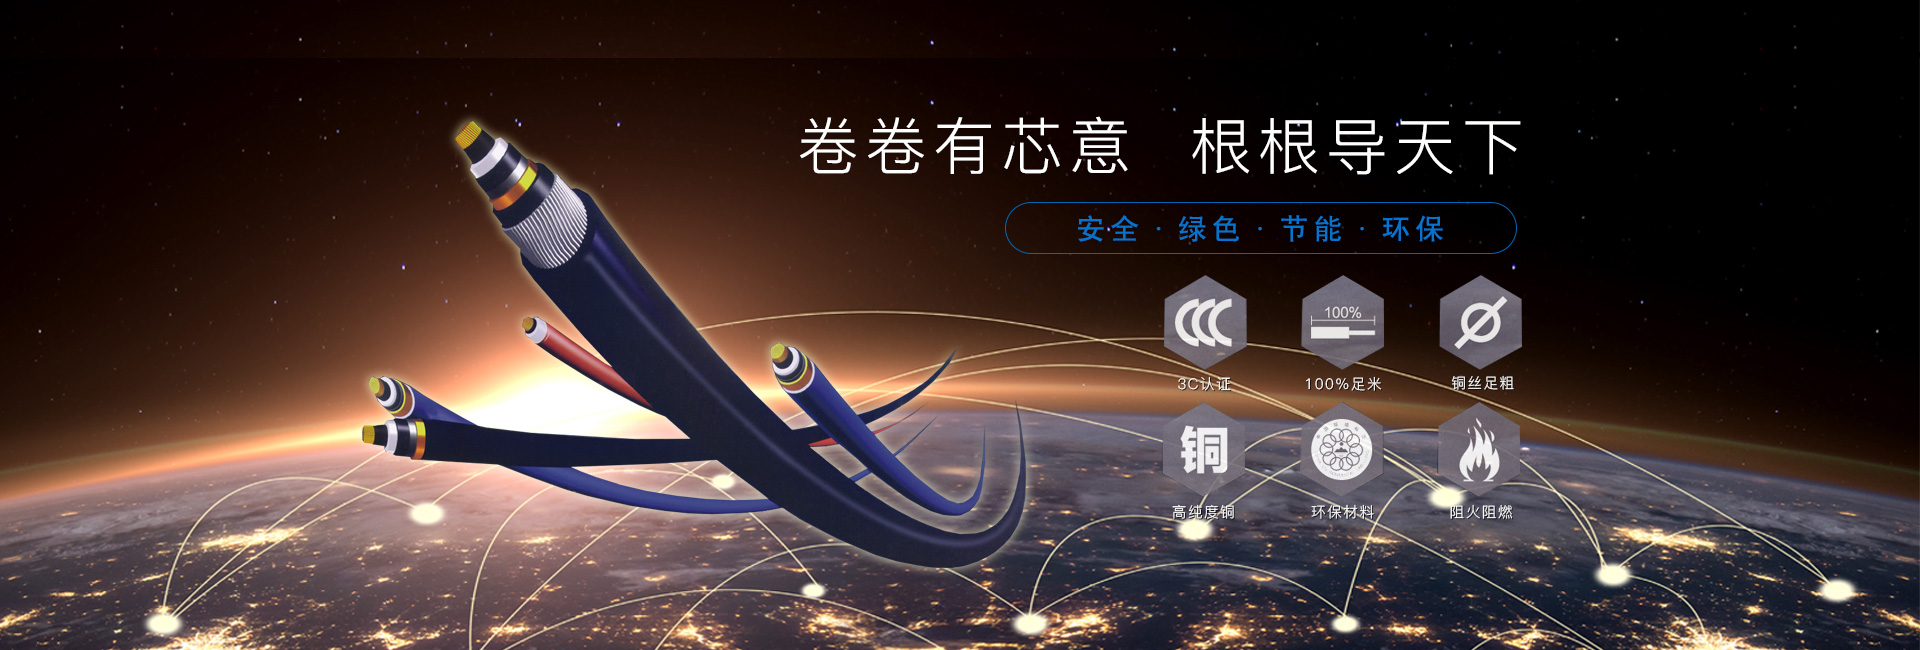 湖南黔陵电线电缆科技有限公司_怀化电线电缆生产|开关出售|插座出售